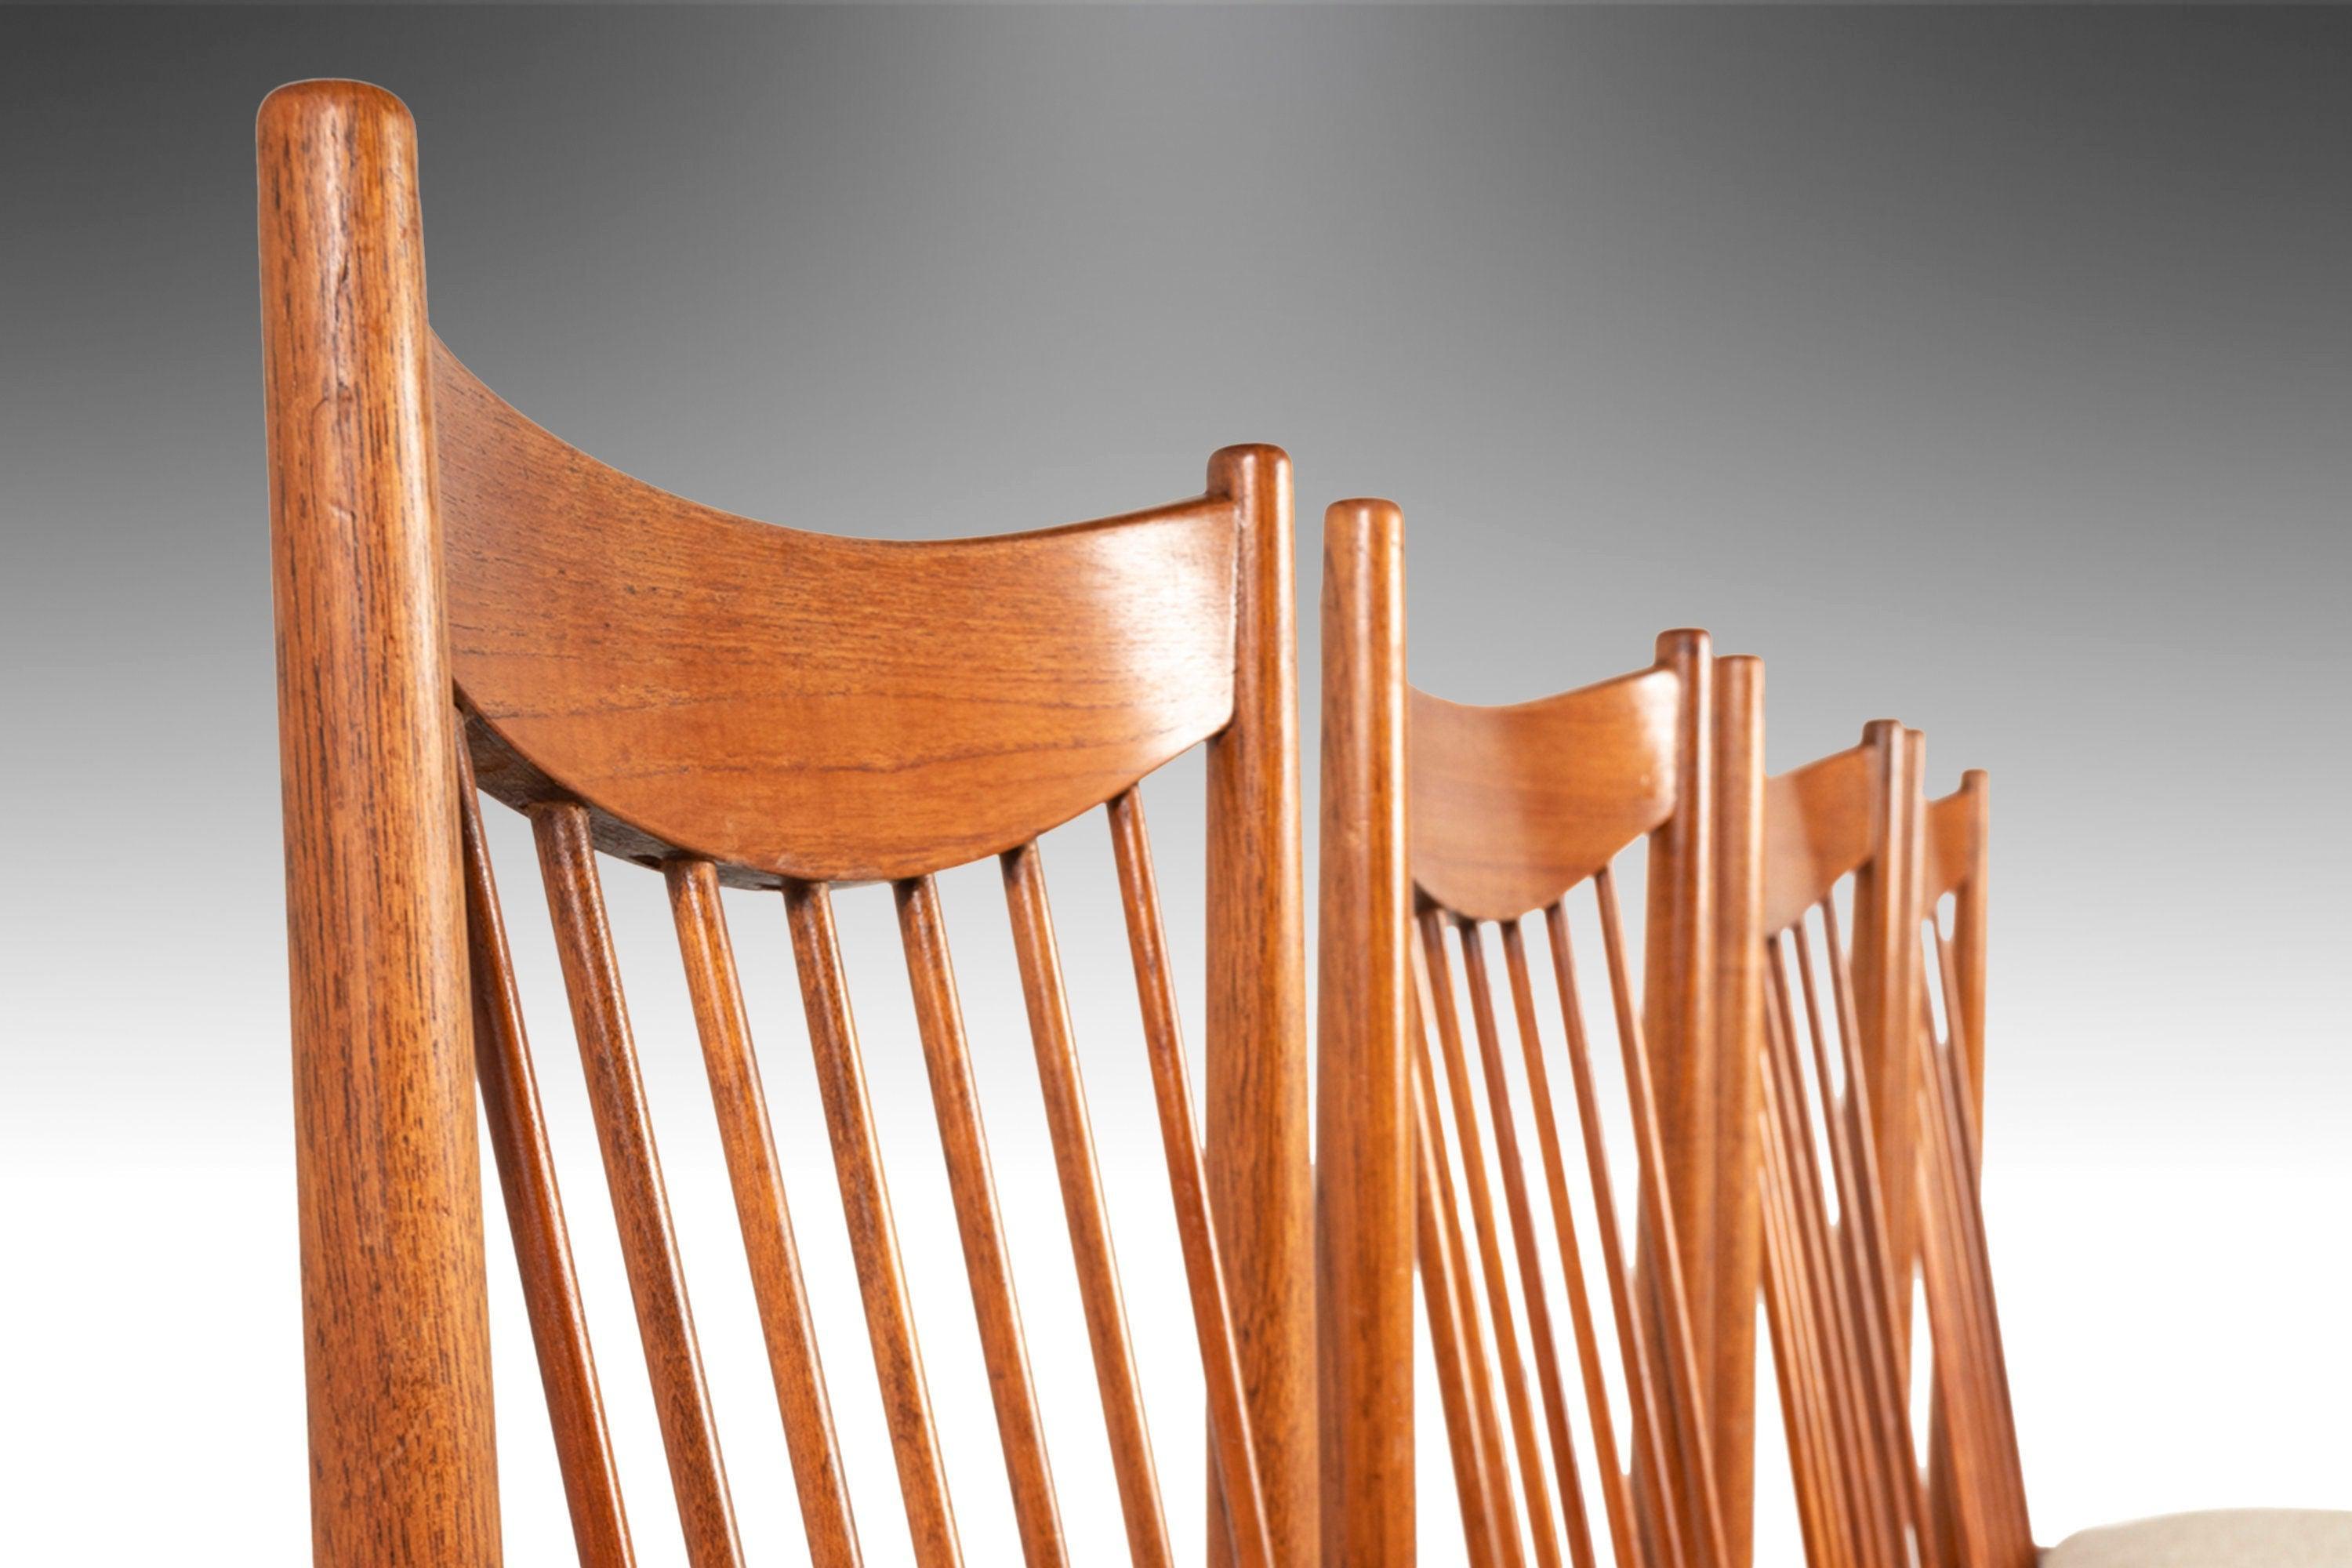 Alliant confort et beauté, cet ensemble de chaises de salle à manger modèle 422, conçu par le célèbre Arne Vodder au milieu des années 60, est un superbe exemple de design minimaliste danois. Construit en teck massif et doté de goujons fins et